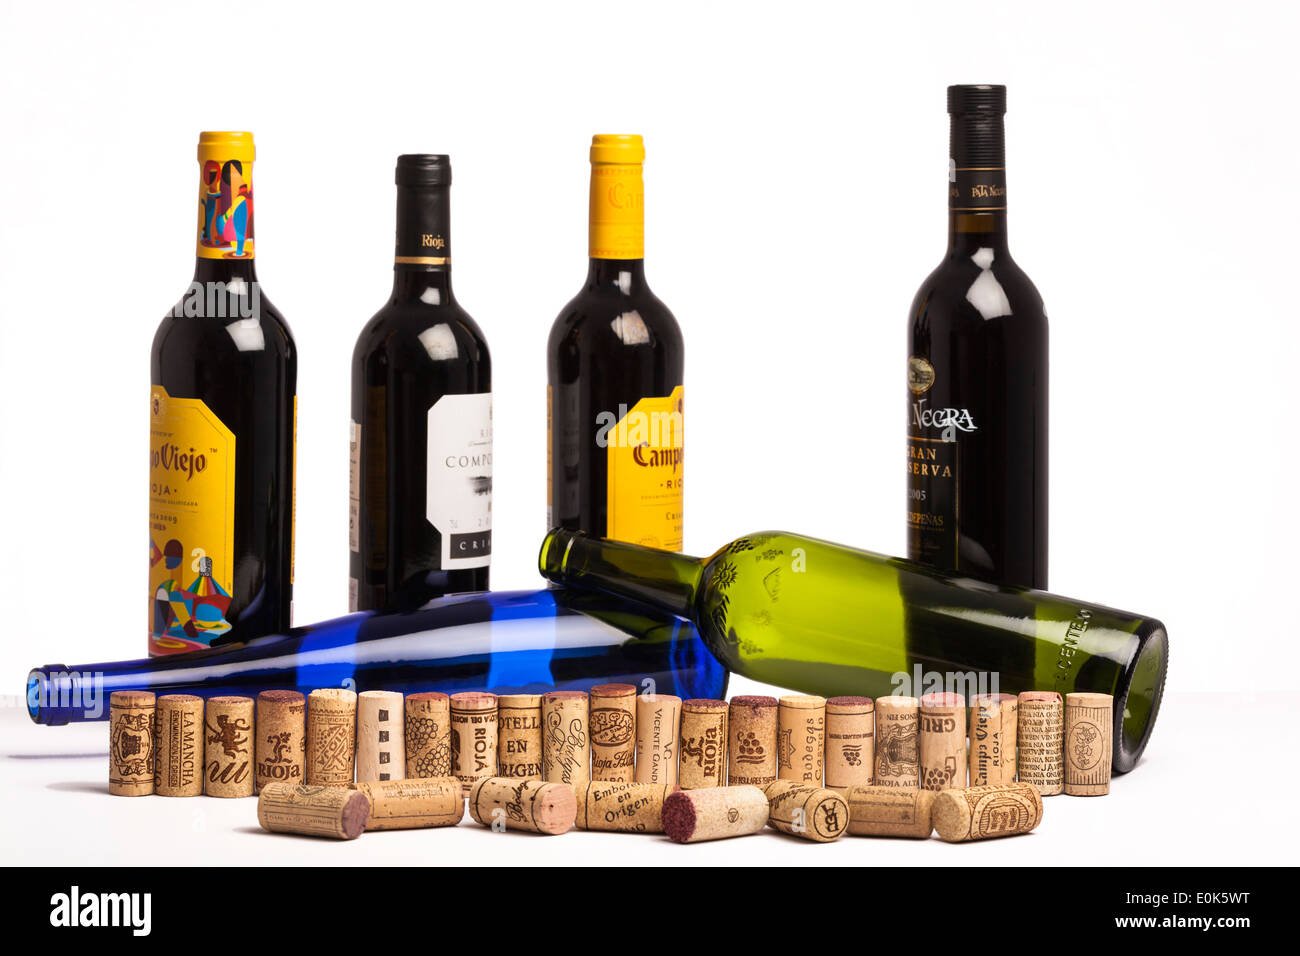 Bouchons et bouteilles de vin provenant de différentes régions de culture espagnole.sur fond blanc, Concept pour les variétés de vins espagnols. Banque D'Images